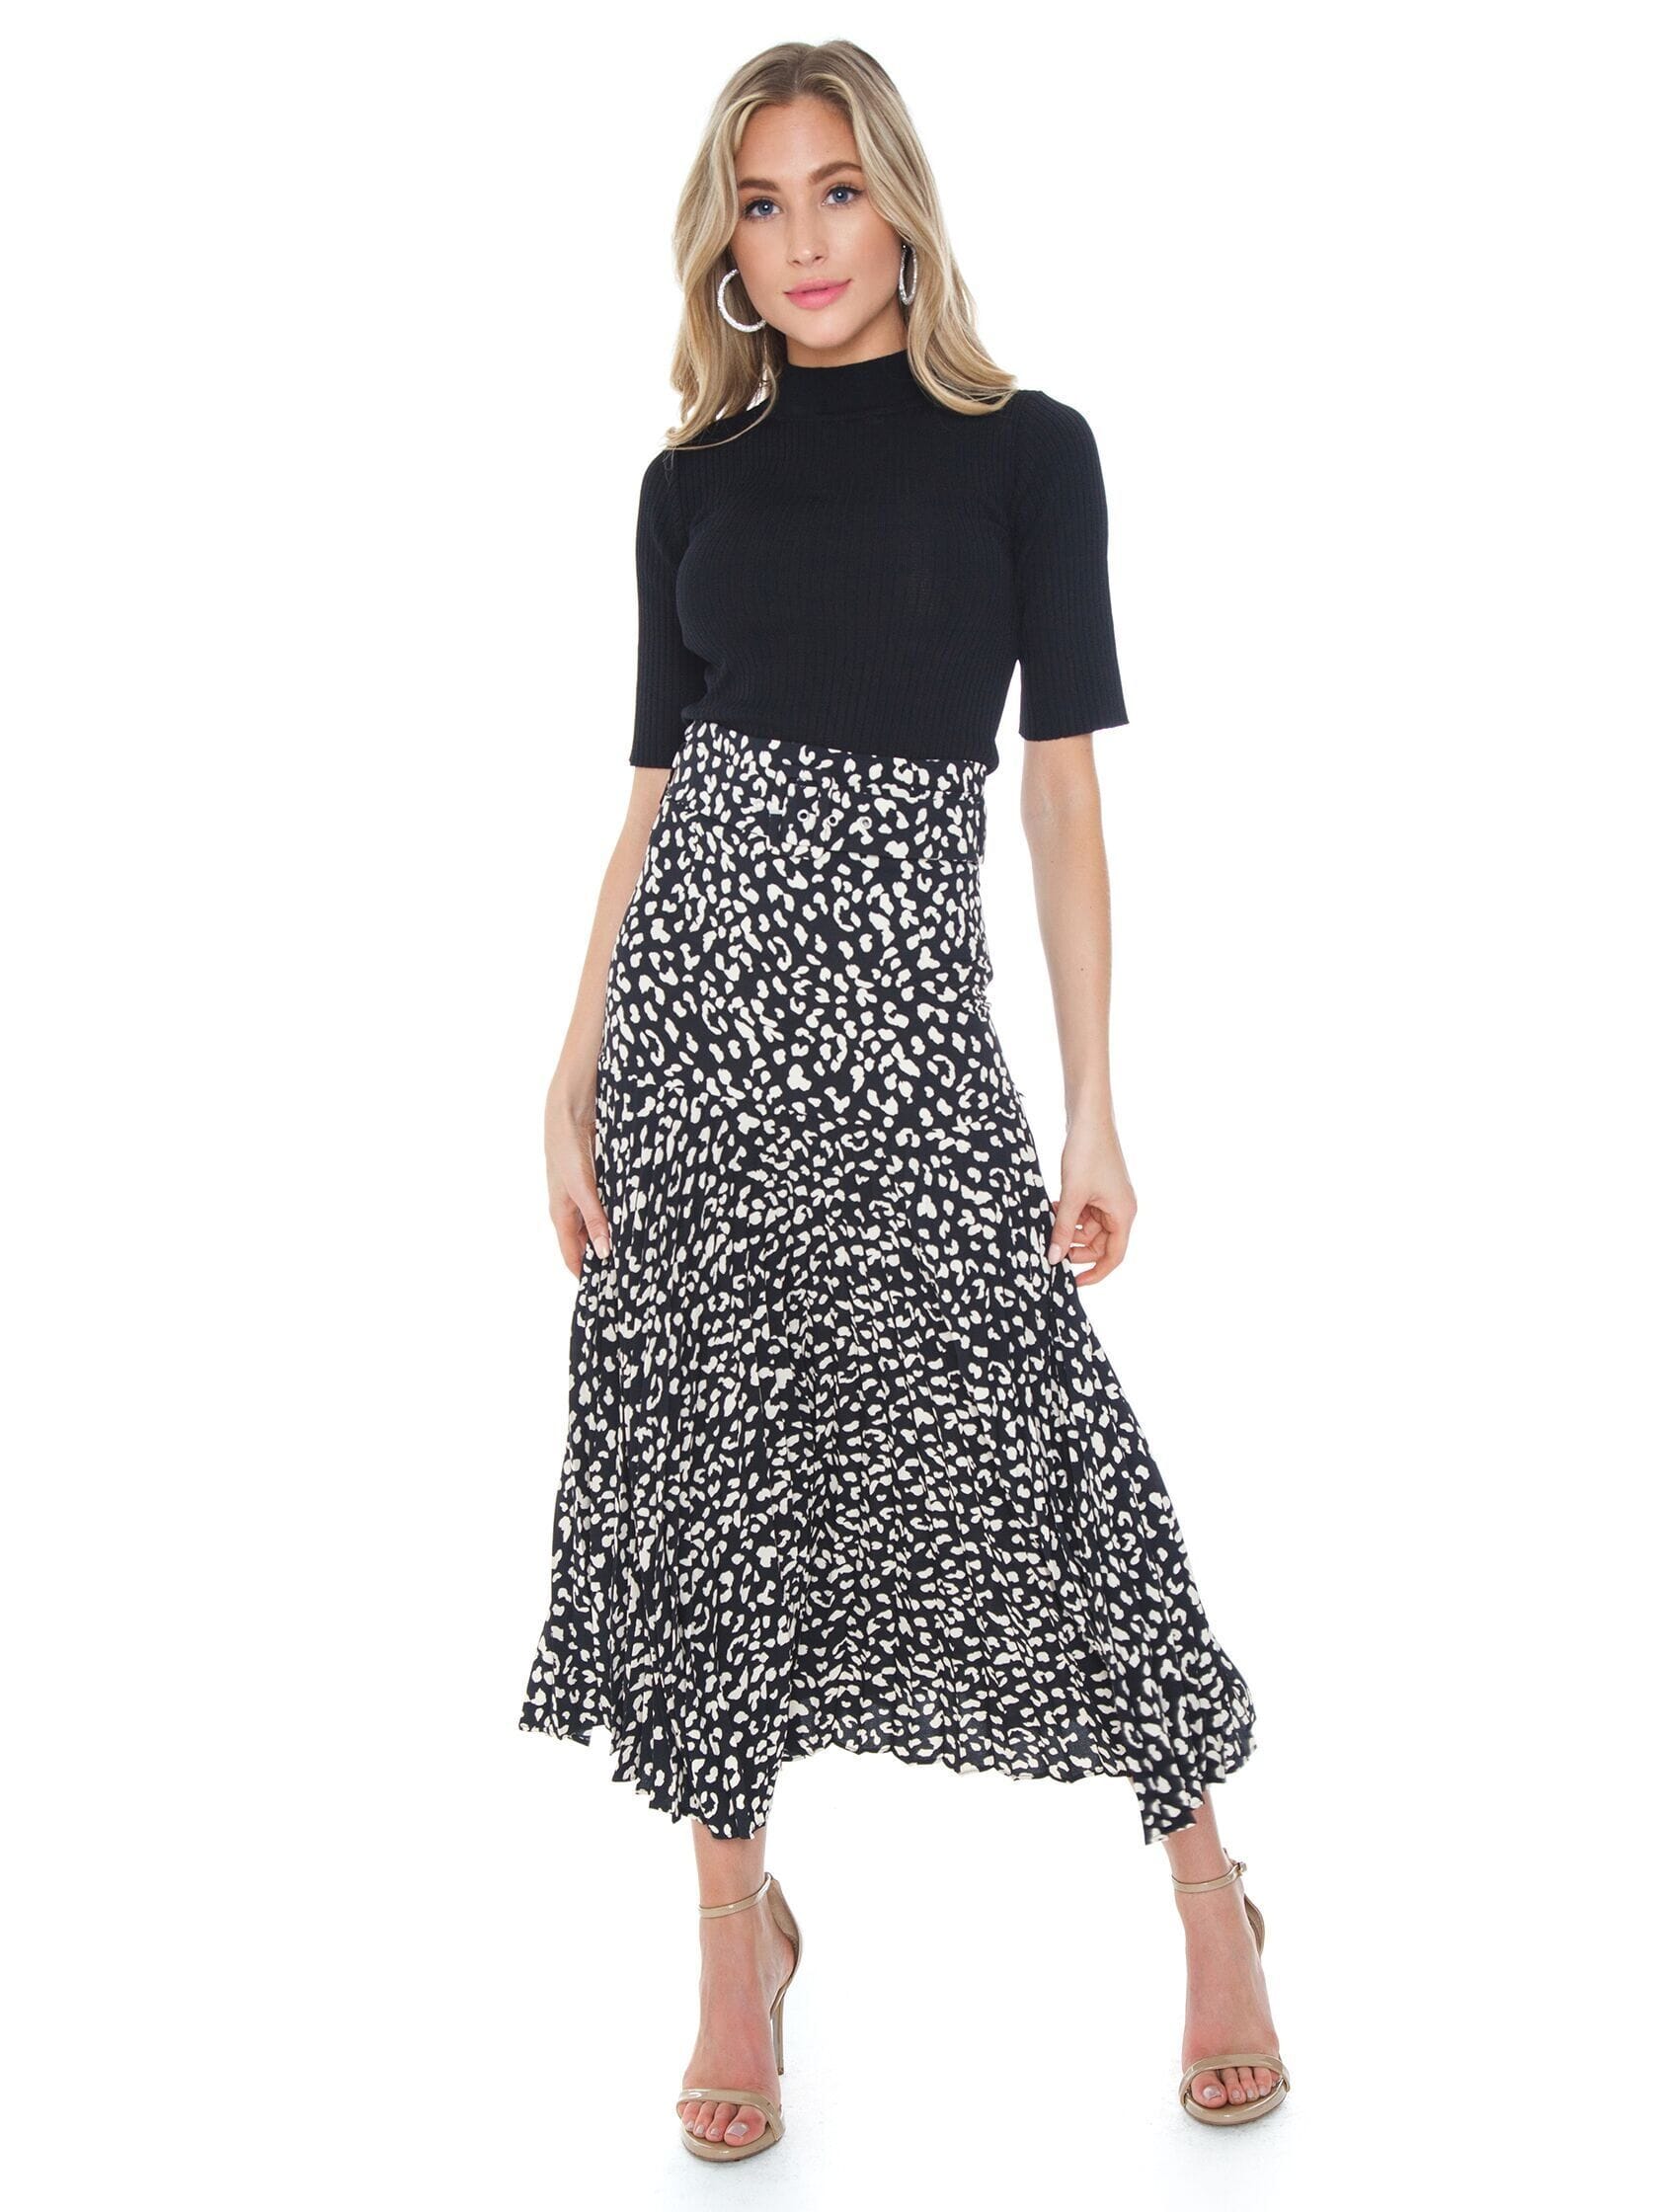 Bardot Buckle Pleated Skirt in Black Leopard